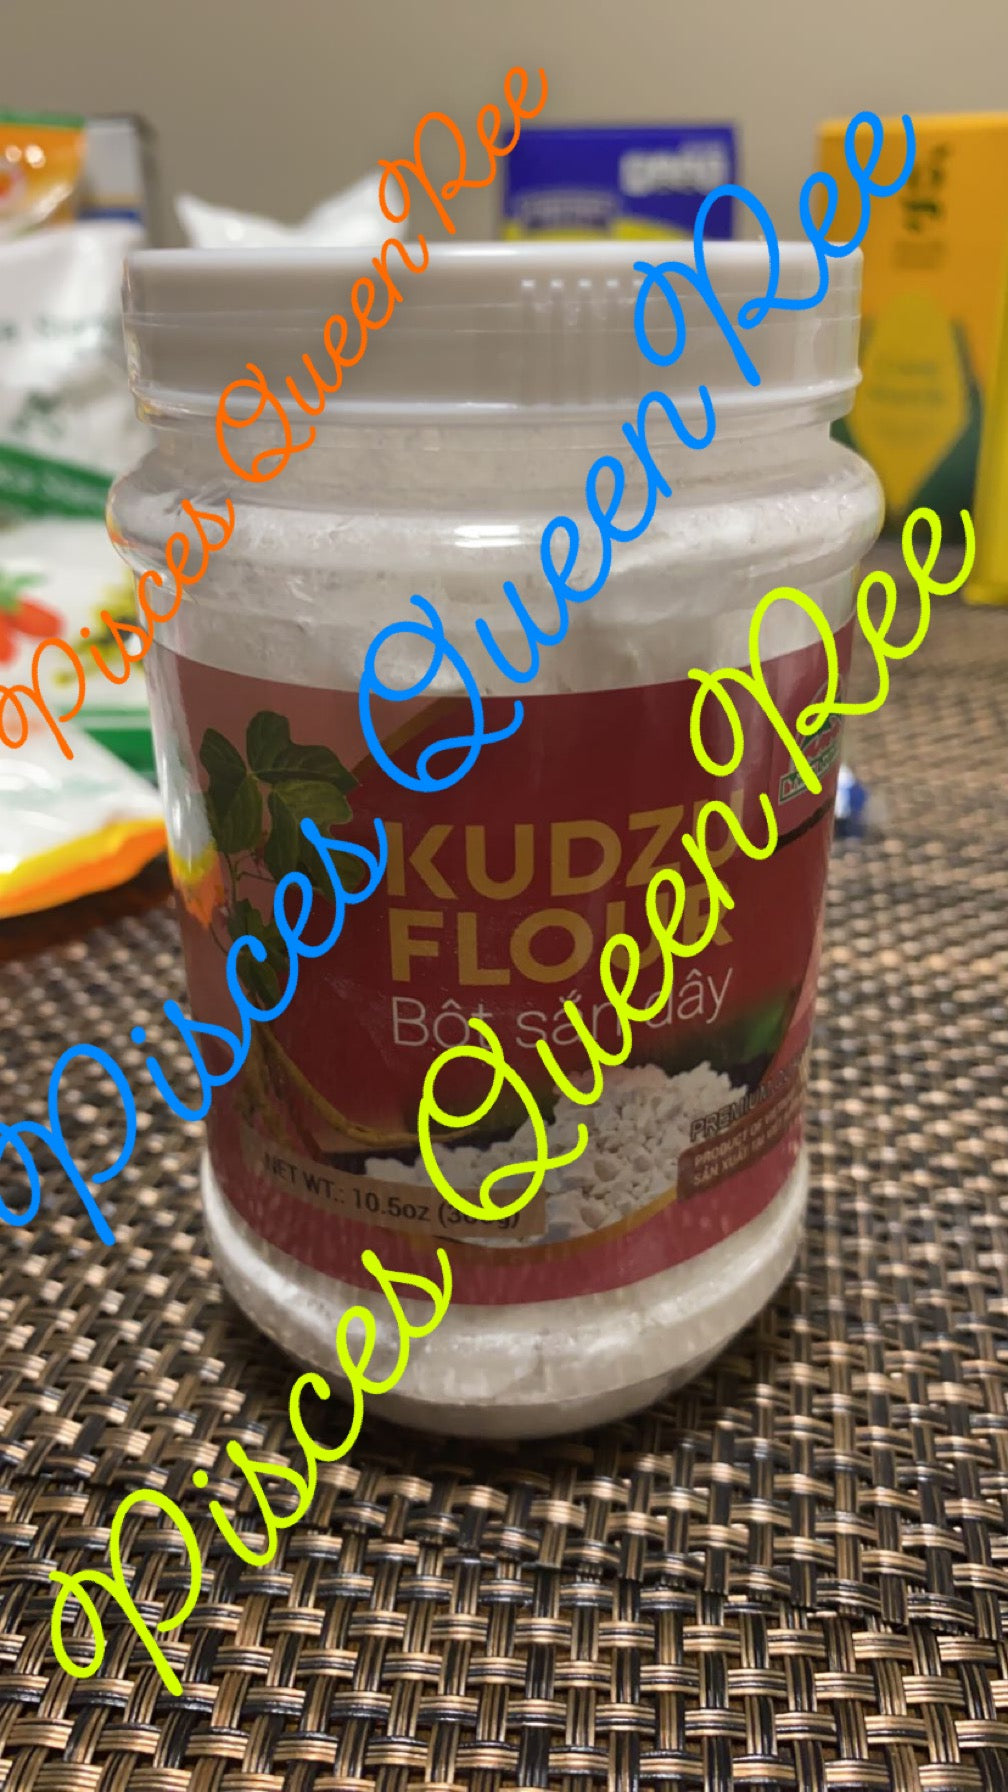 Kudzu Flour Bot San Day – PiscesQueencornstarch Store